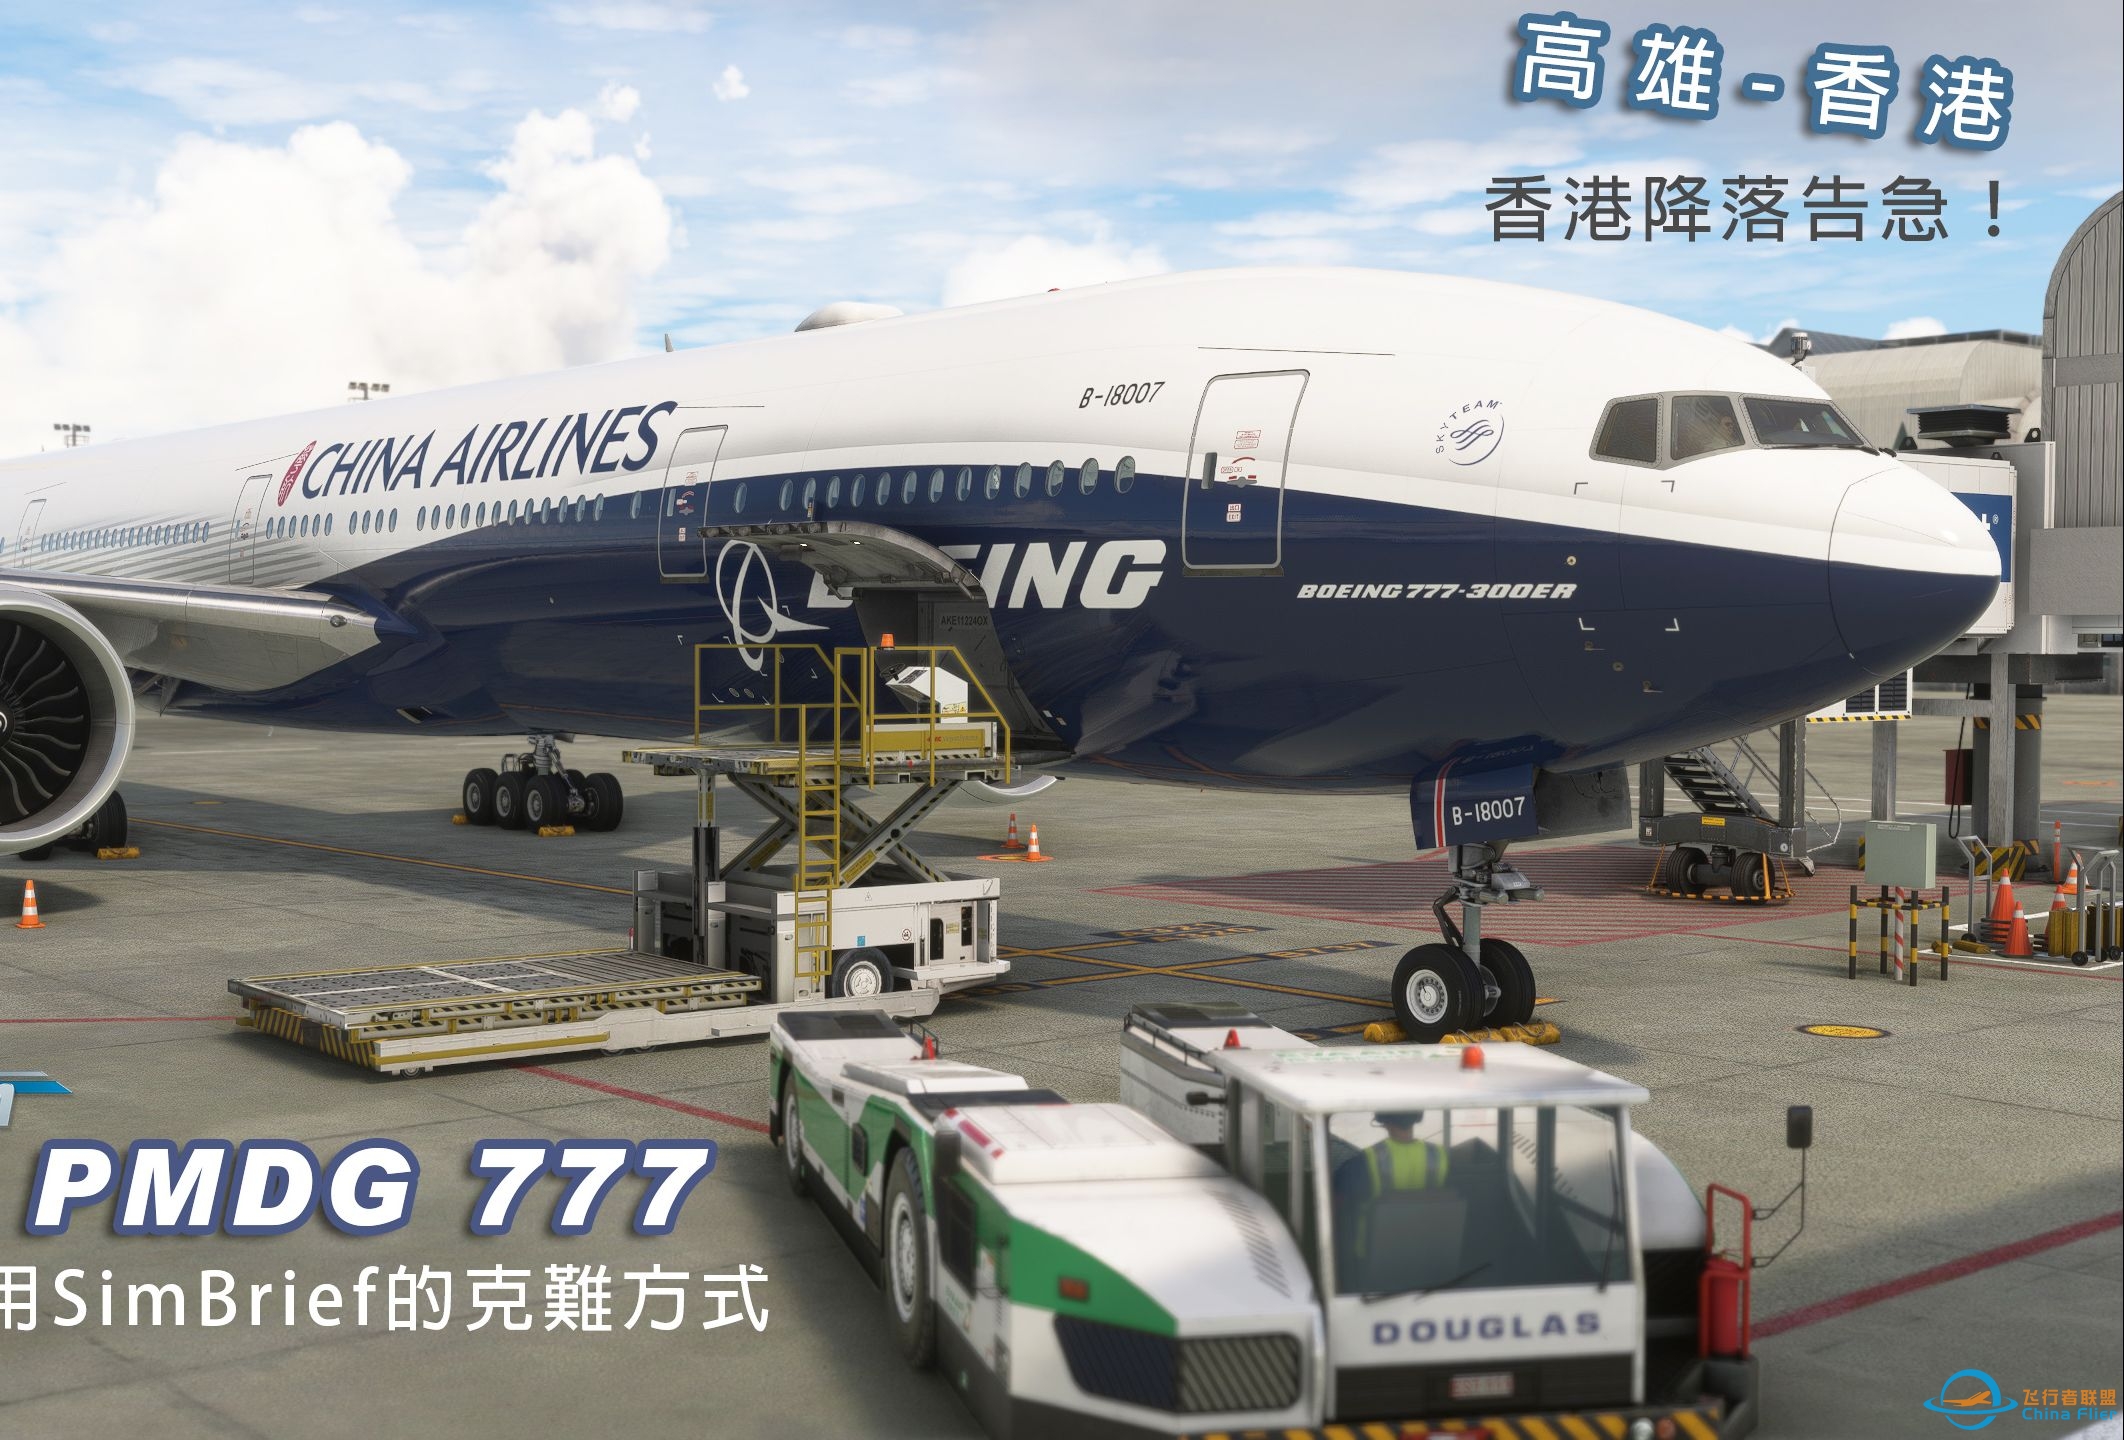 微软飞行模拟 PMDG 777 高雄-香港 免费仔使用SimBrief的克难方式 香港降落告急！-2114 